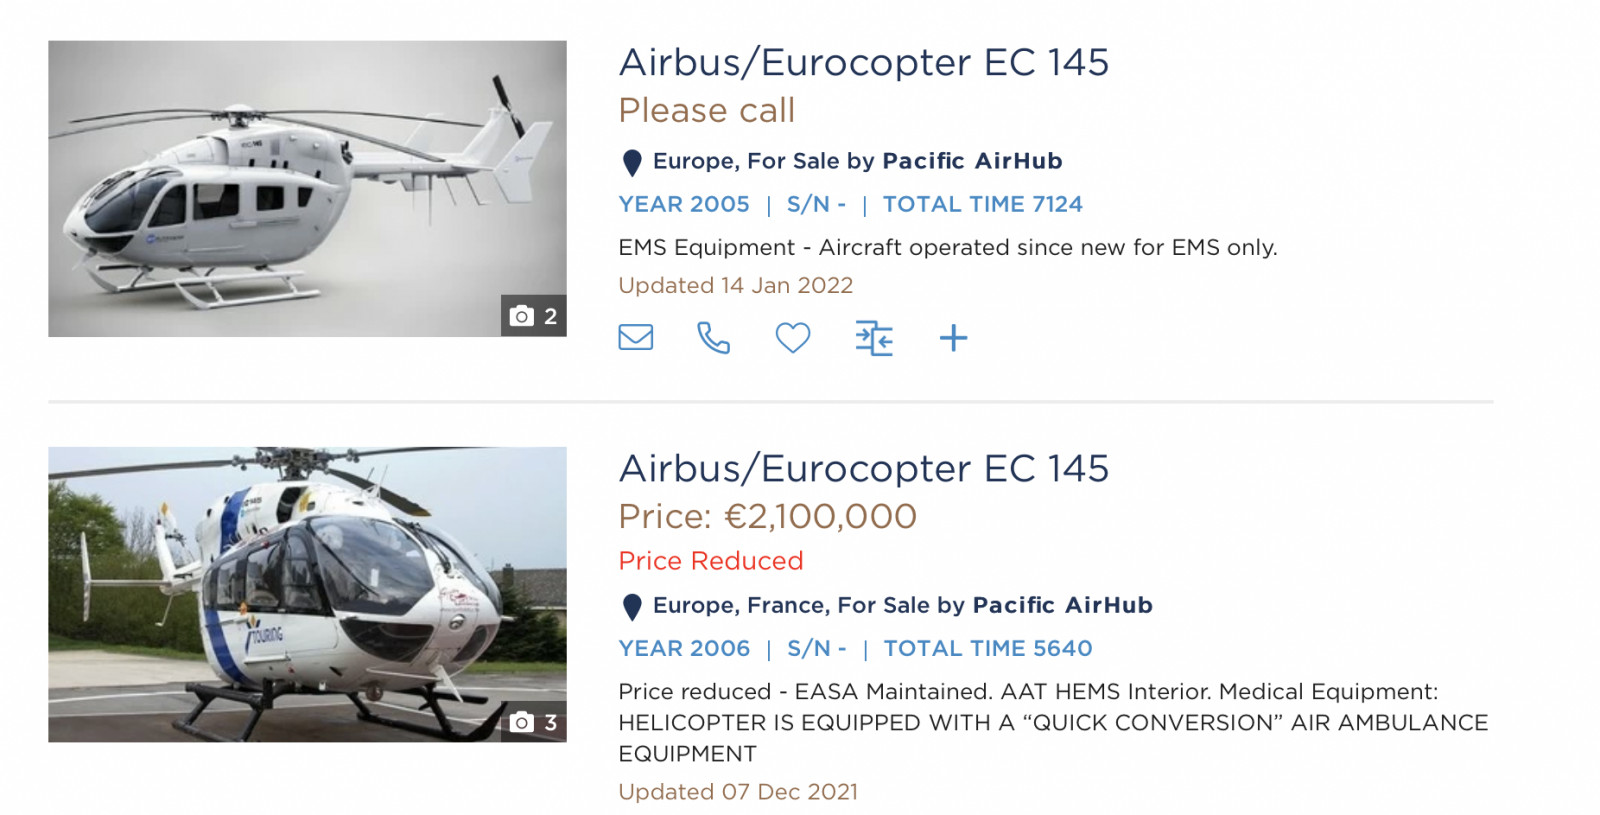 Airbus EC-145 загварын хуучин нисдэг тэрэг худалдаалагдаж байгаа үнэ